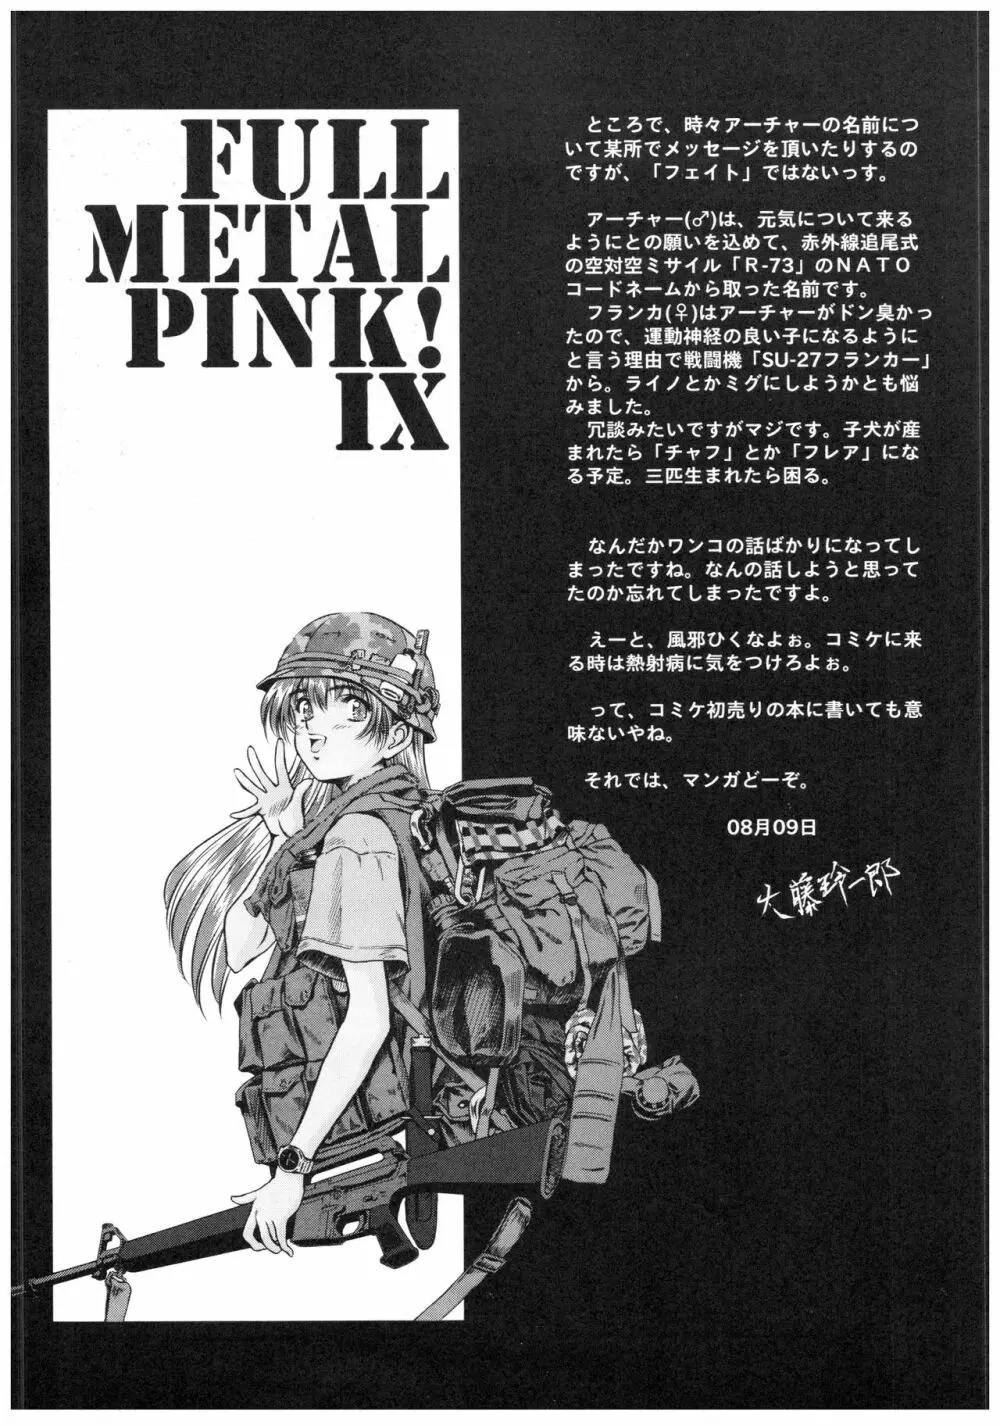 Full Metal Pink! IX - page14